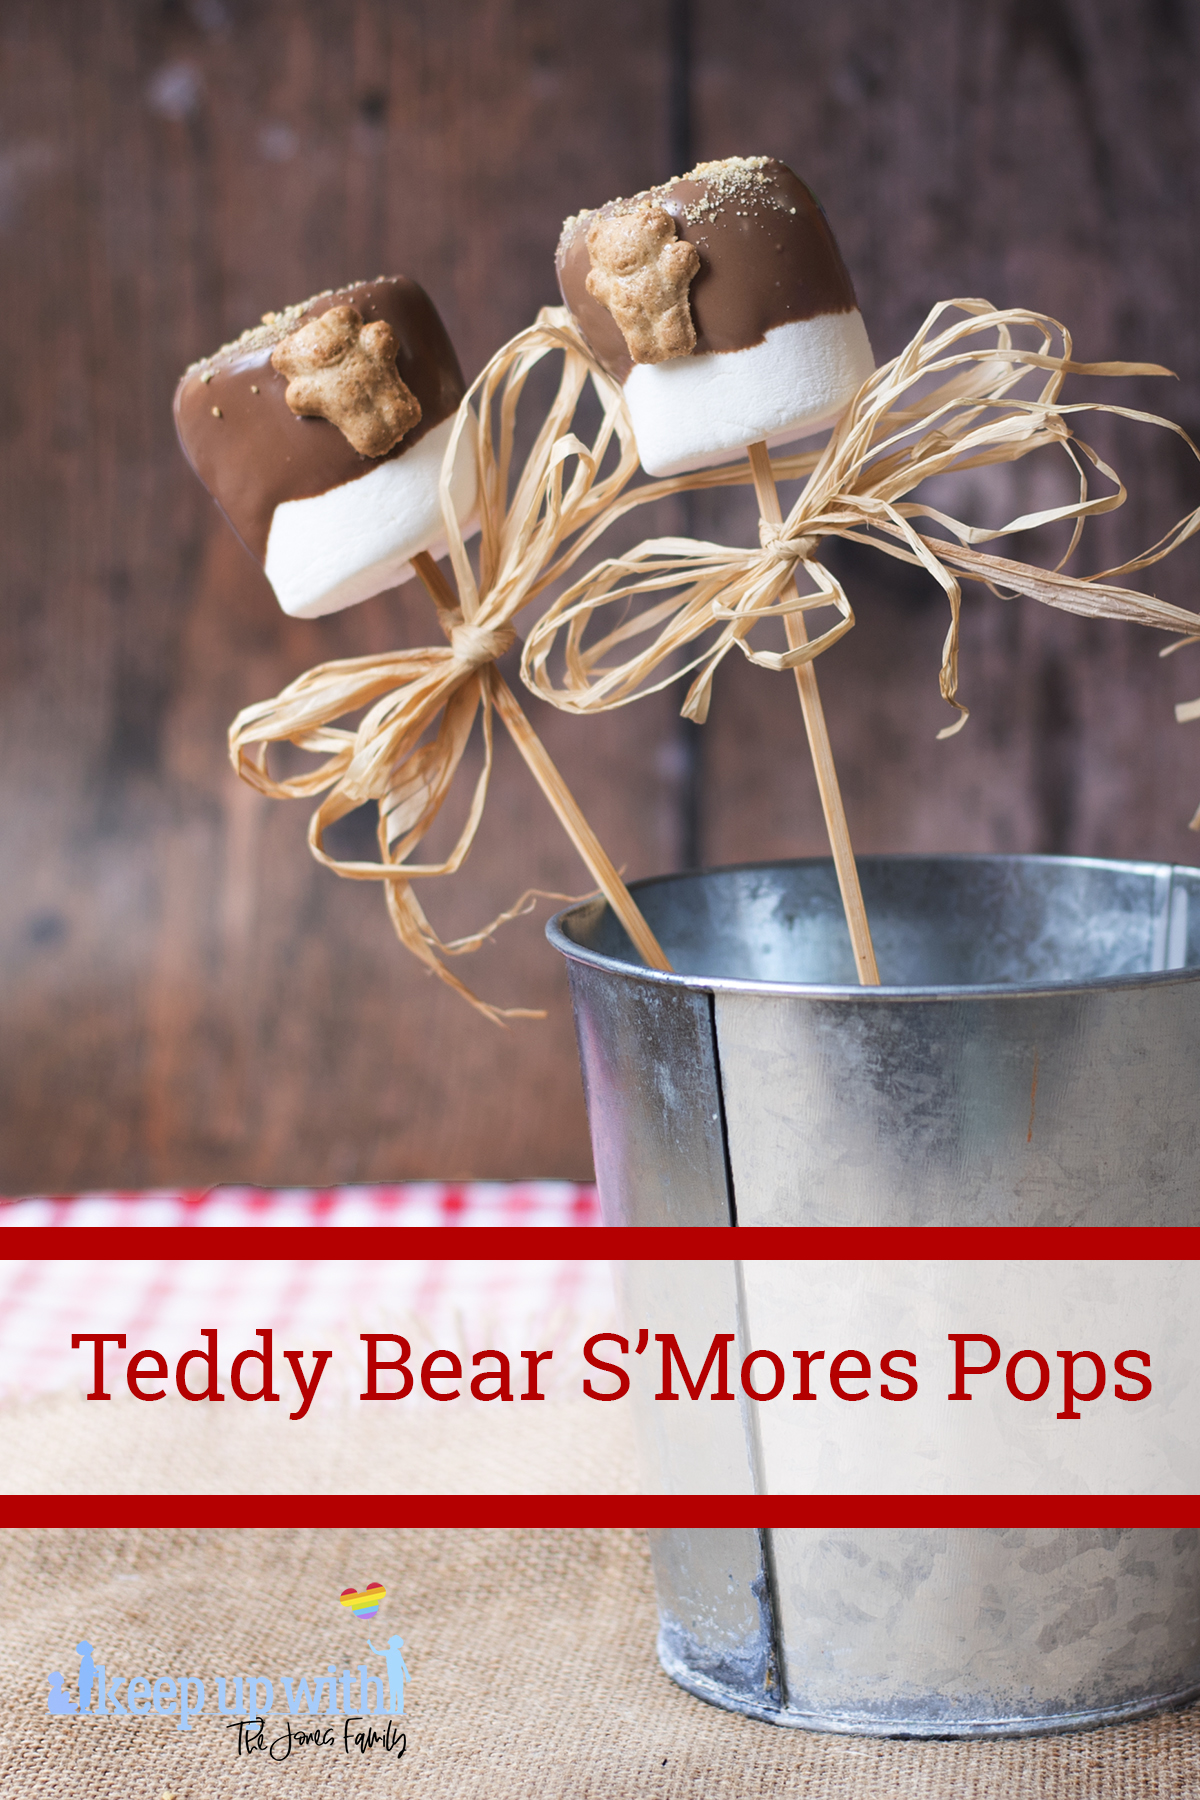 Teddy Bear S’More Pops